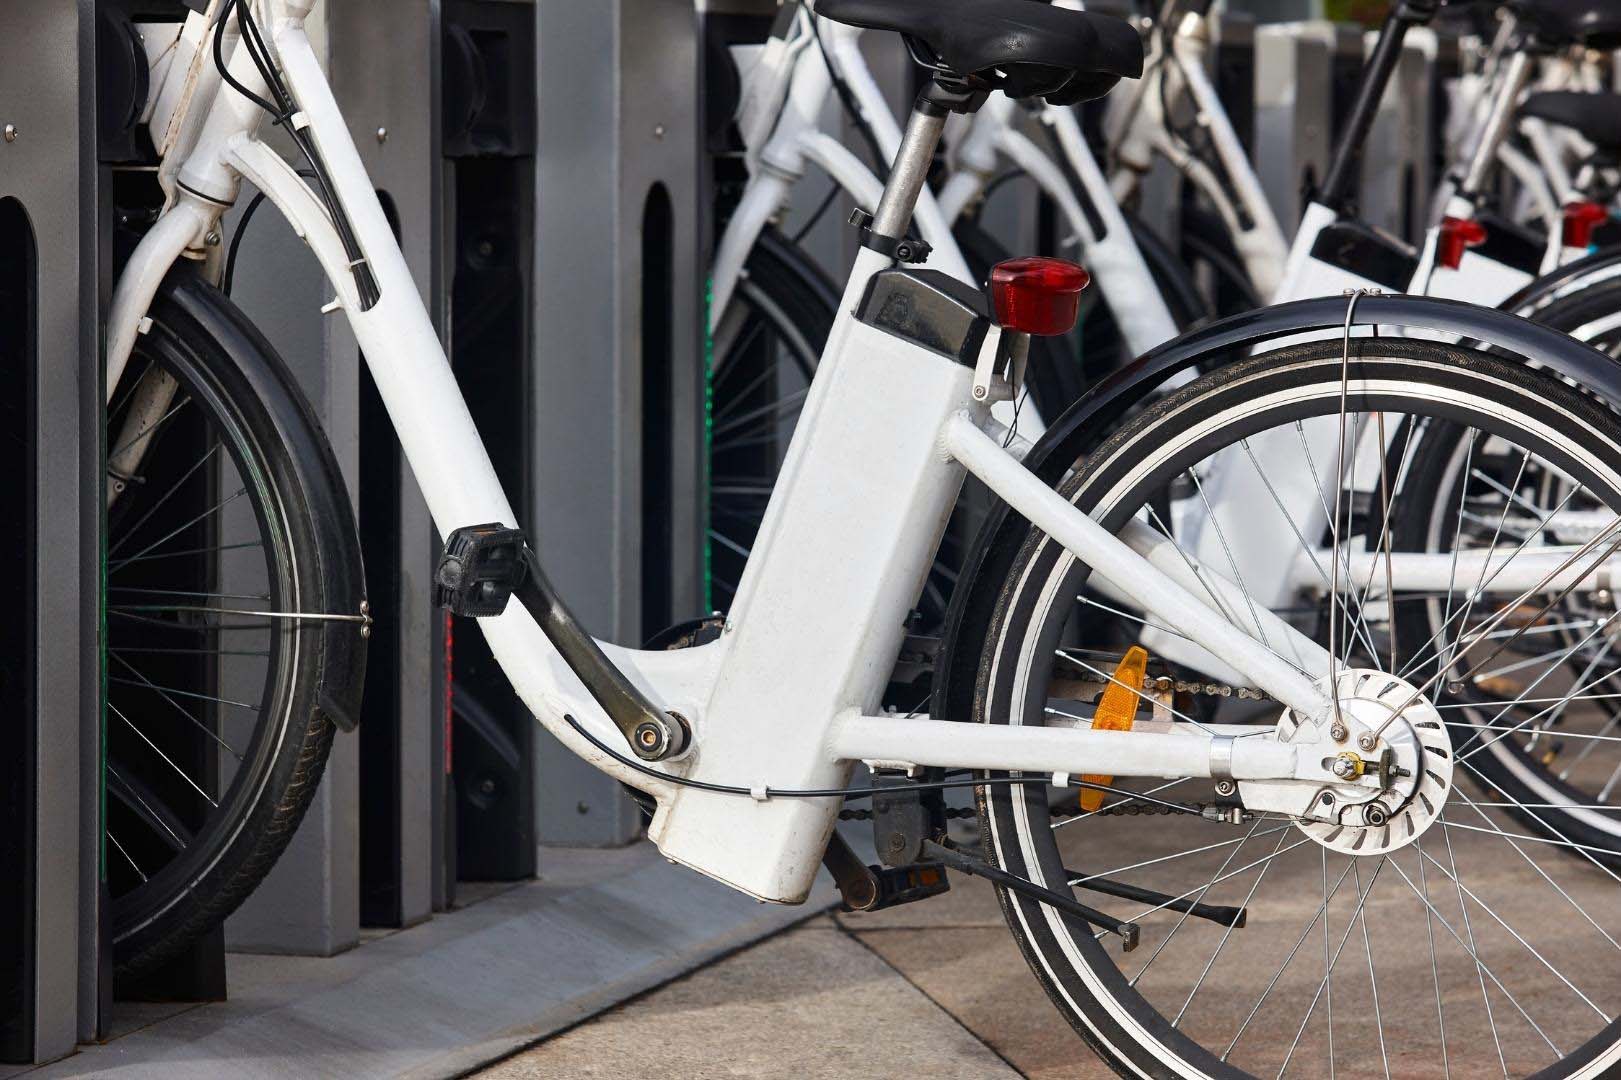 Δήμος Παιανίας: Σταθμοί ηλεκτρικών ποδηλάτων για χρήση από τους δημότες